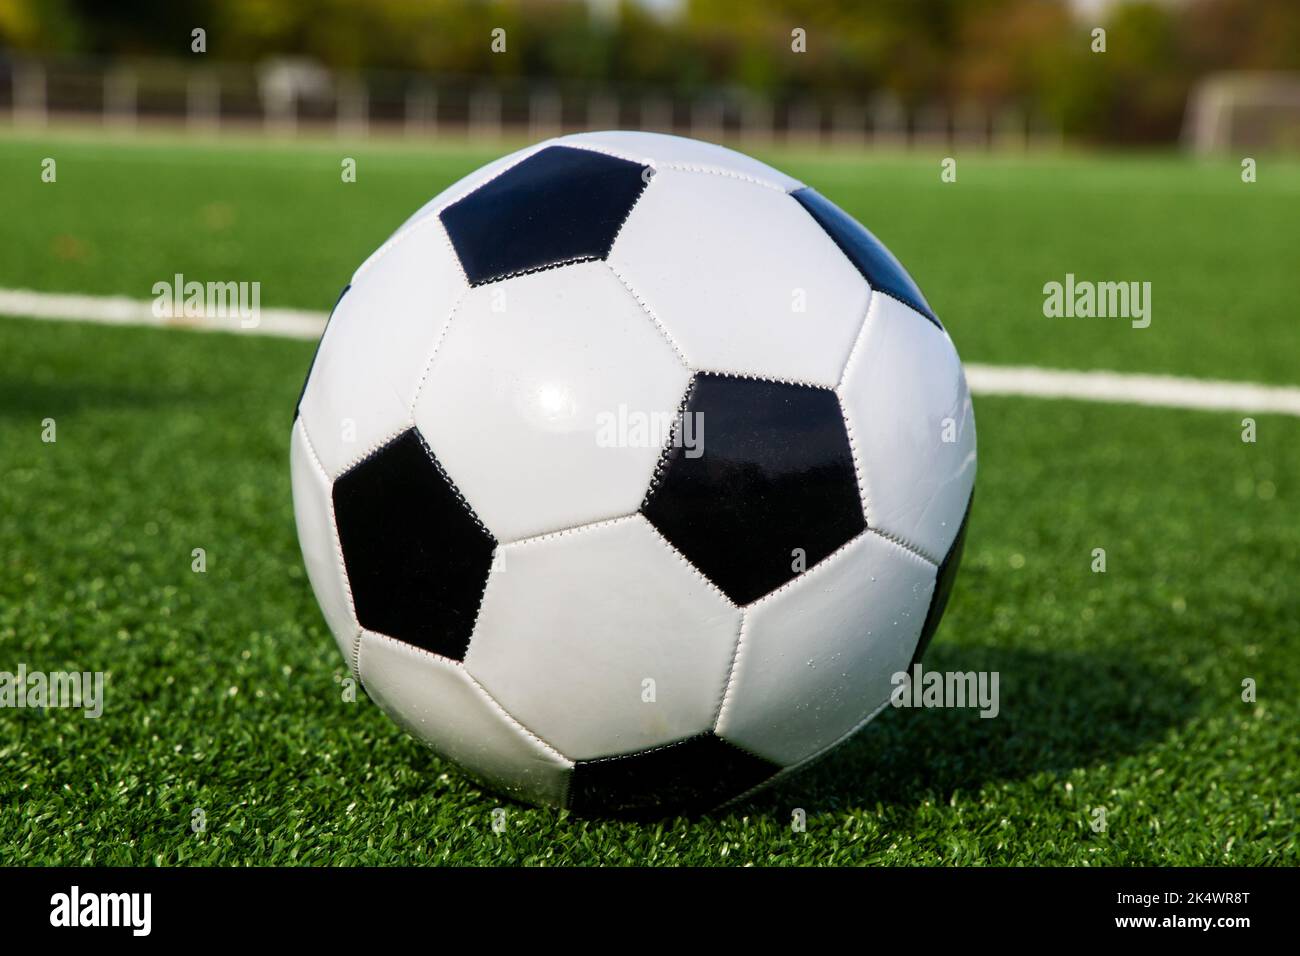 Imagen de símbolo: Fútbol en un campo de fútbol vacío Foto de stock